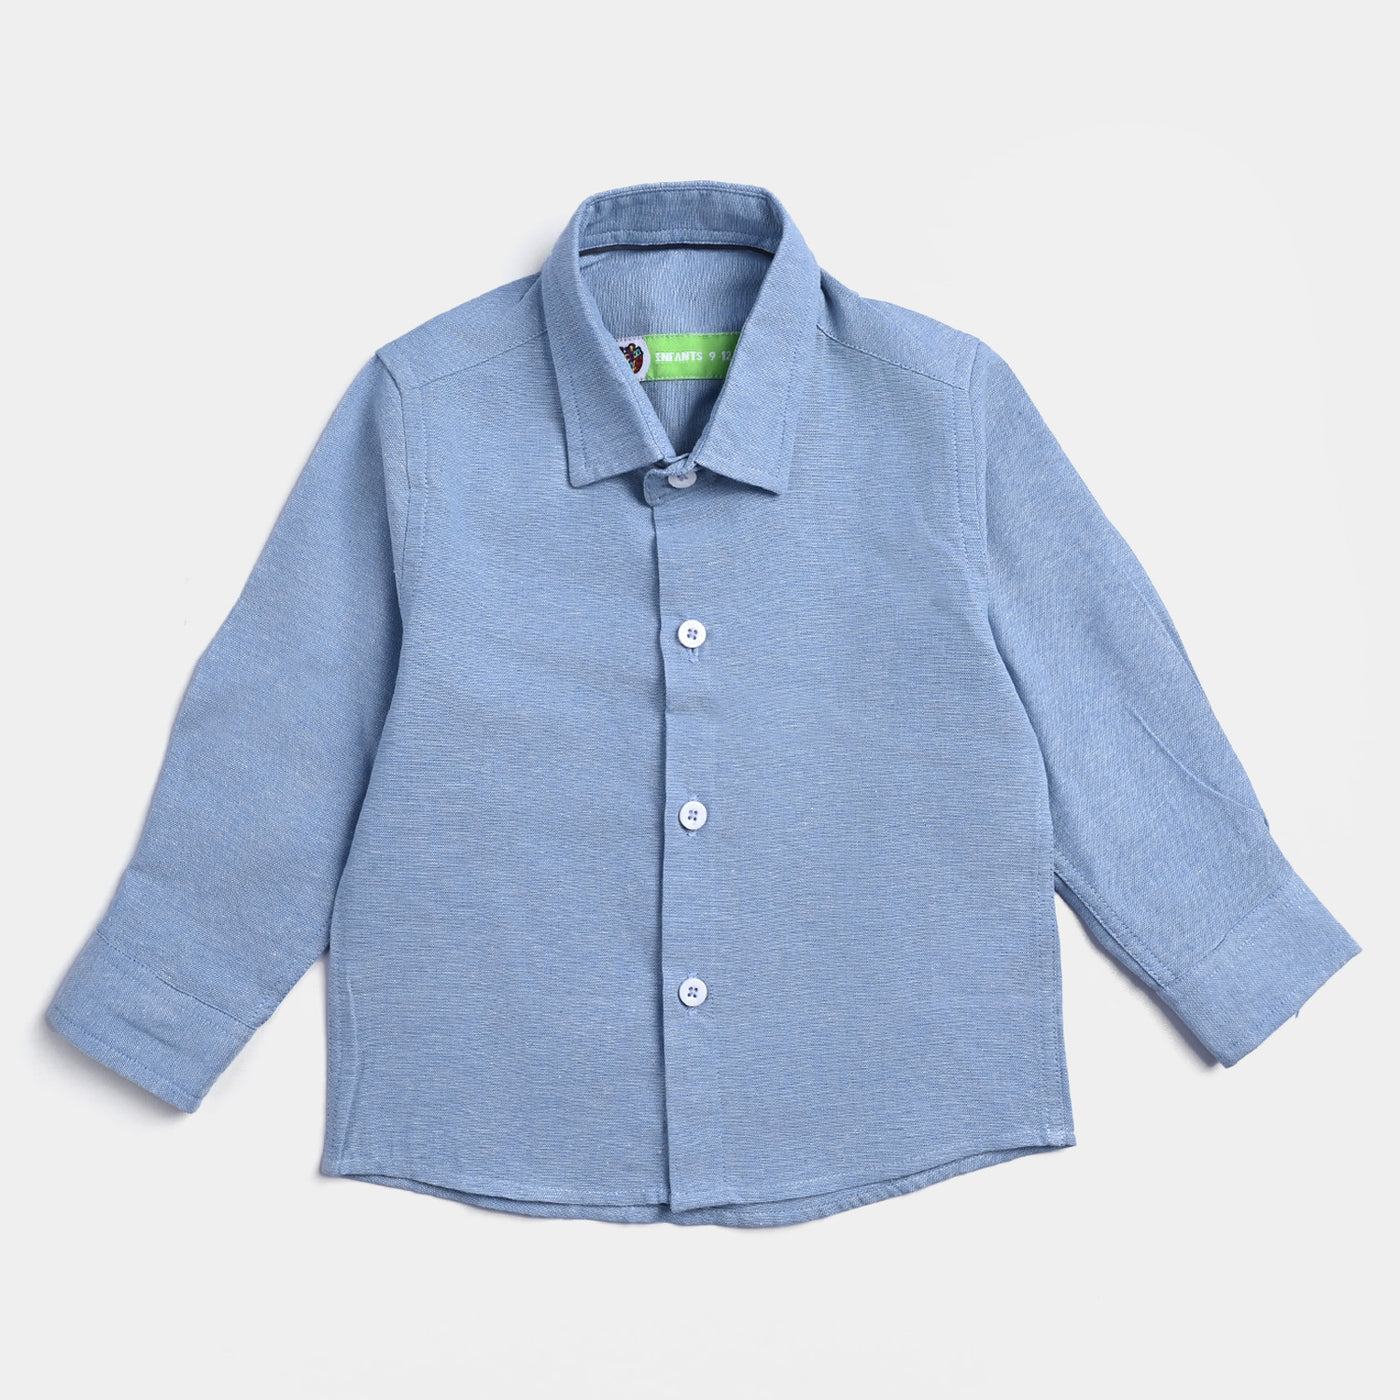 Infant Boys Oxford Formal Shirt -I/Blue